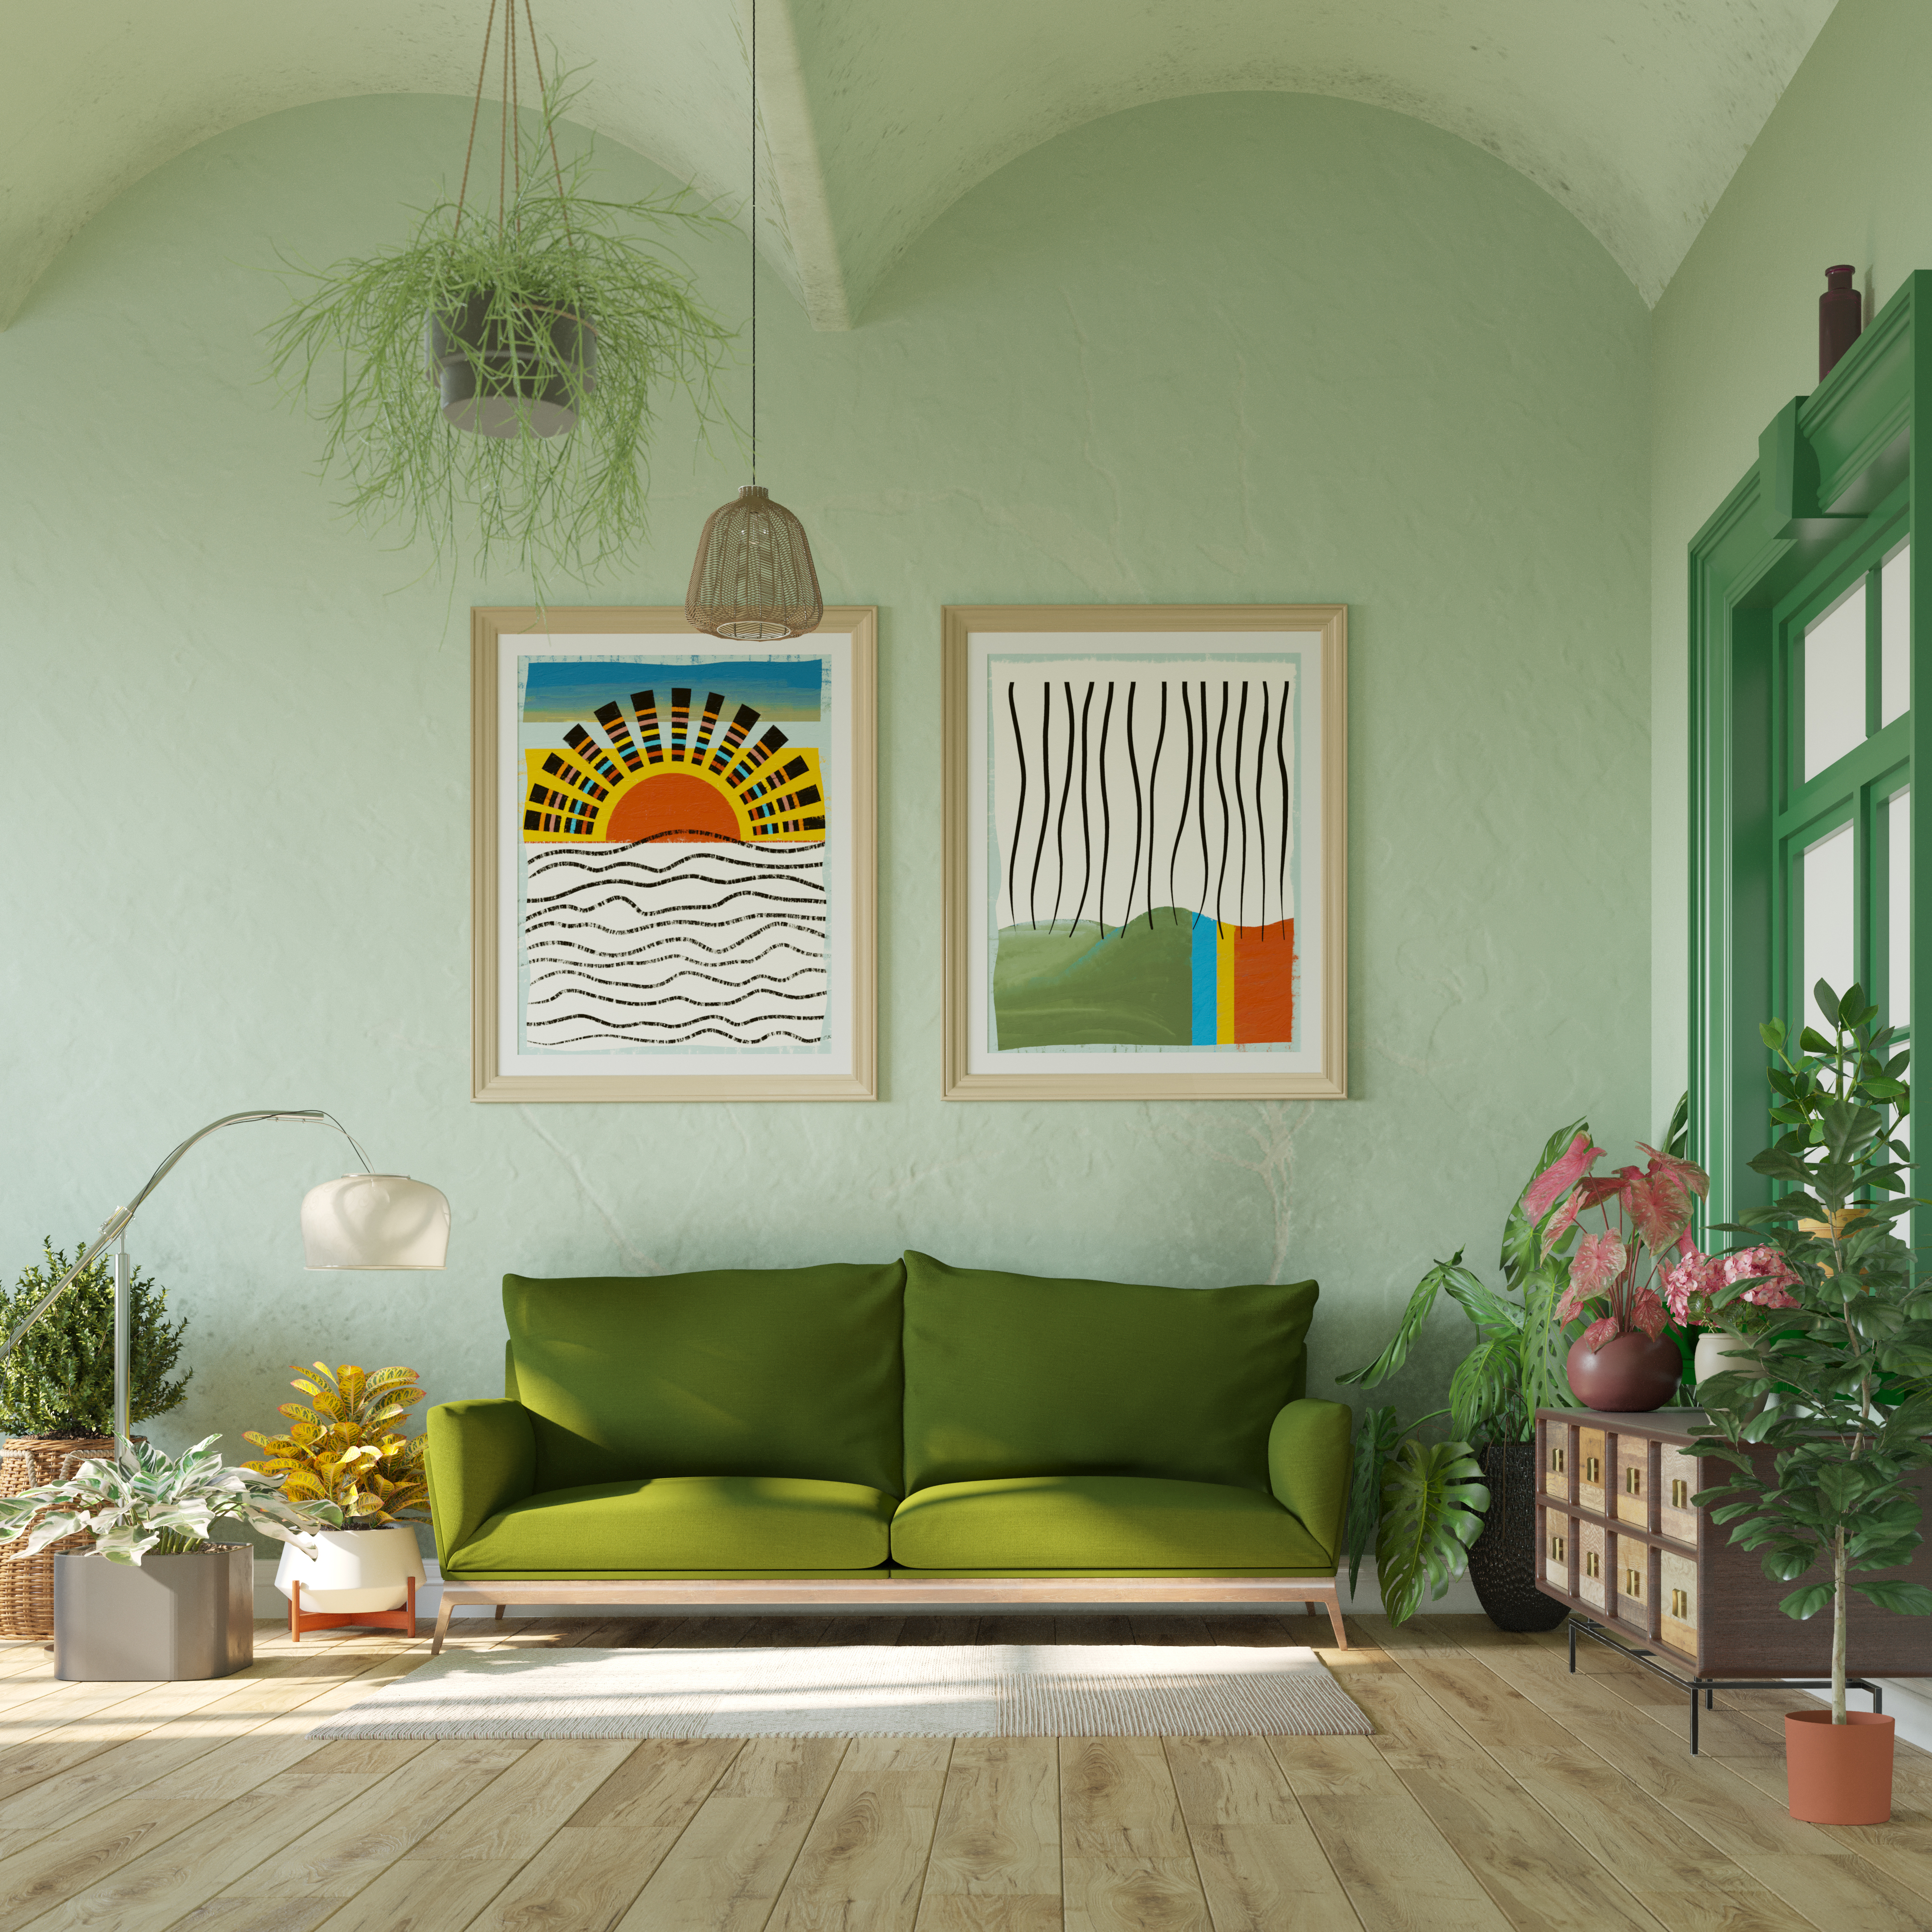 Ein Zimmer mit gerahmten Kunstwerken | Quelle: Getty Images